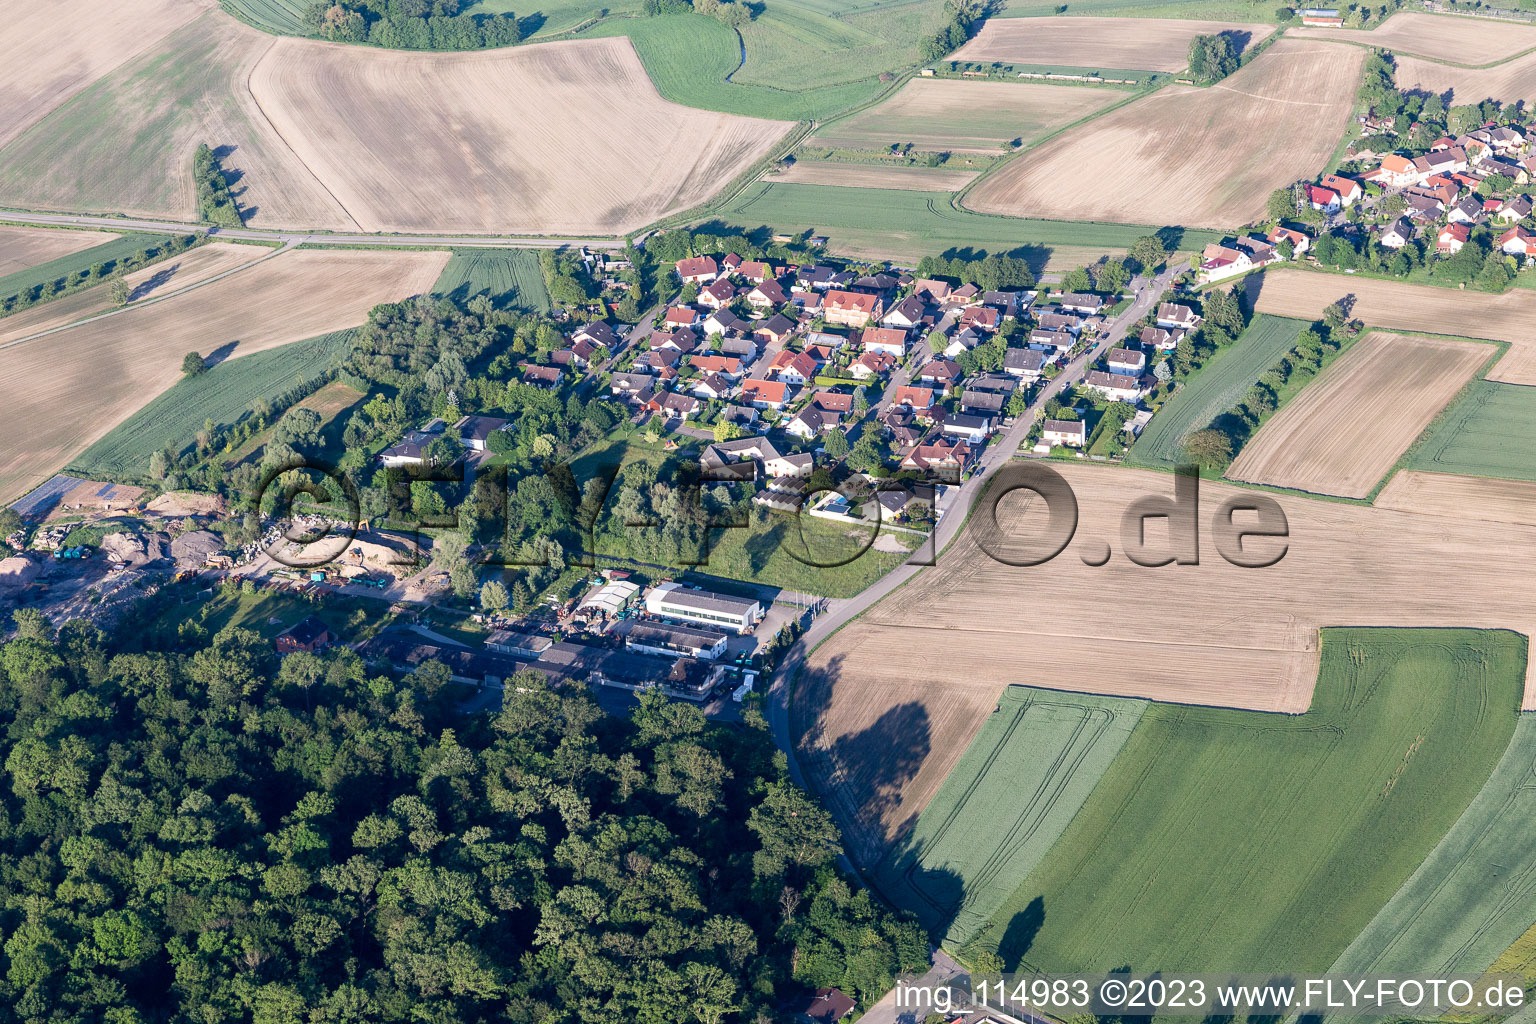 Luftbild von Ortsteil Linx in Rheinau im Bundesland Baden-Württemberg, Deutschland